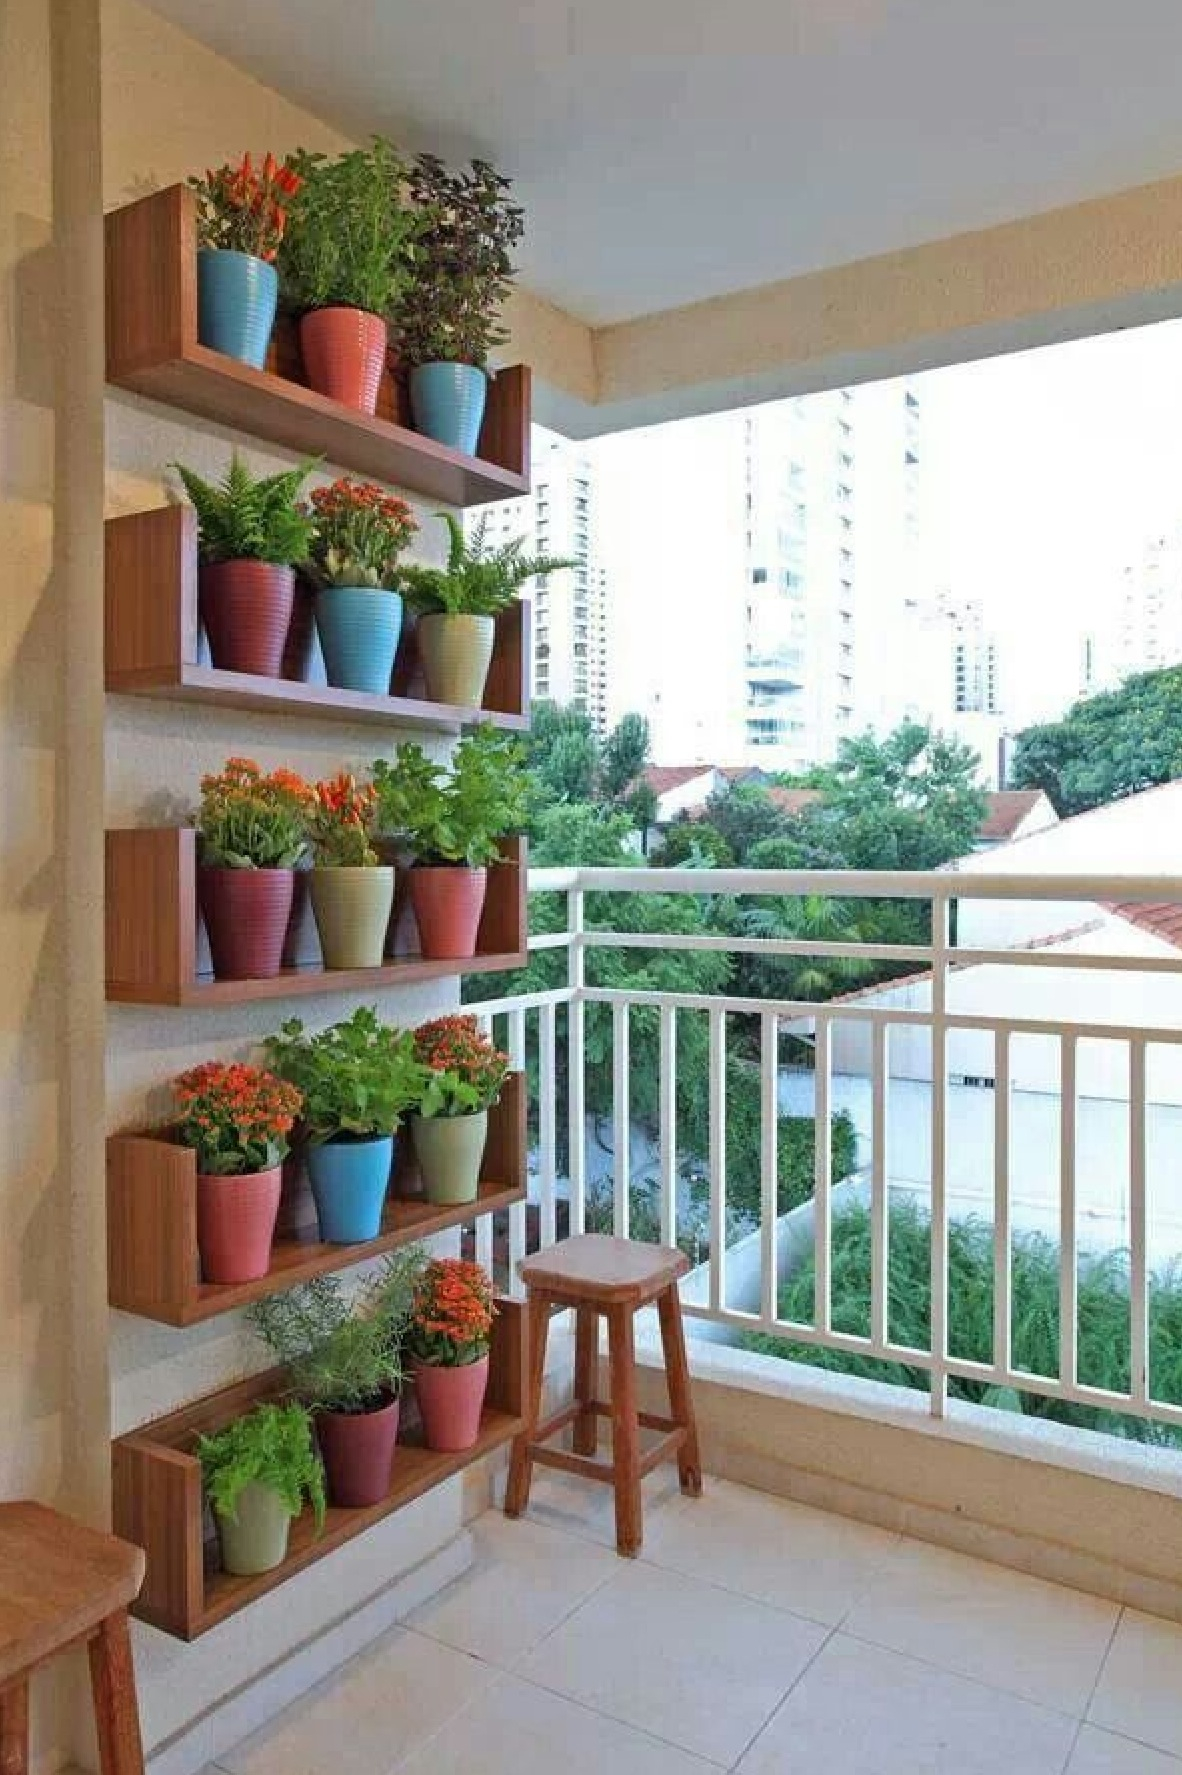 Полки на балкон купить. Стеллаж для цветов на балкон. Полка для цветов на балкон. Полки для цветов на лоджии. Полочки на балконе для цветов.